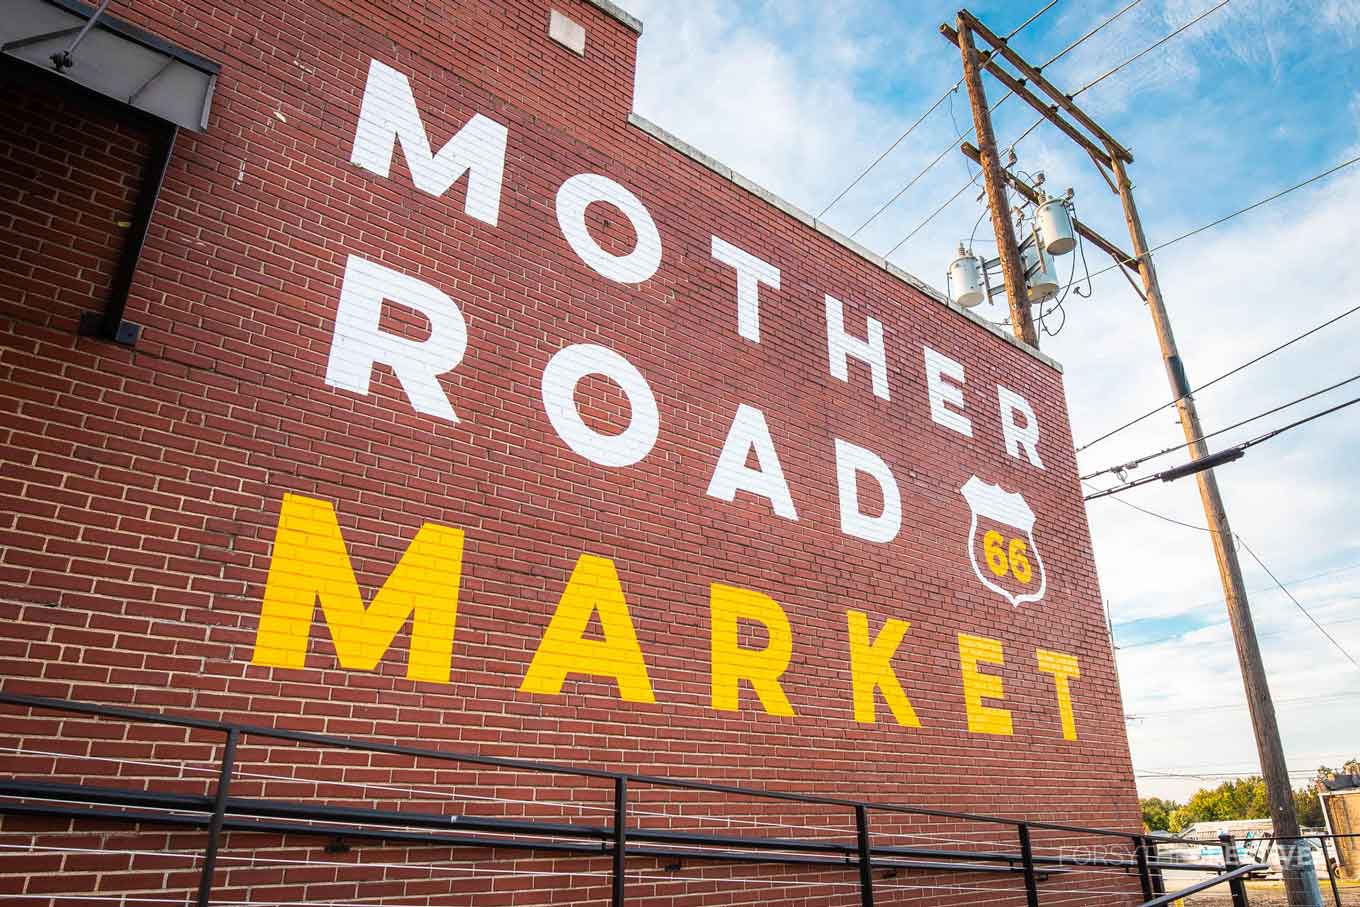 Mother Road Market Route 66 woorden geschilderd op een bakstenen gebouw in Tulsa